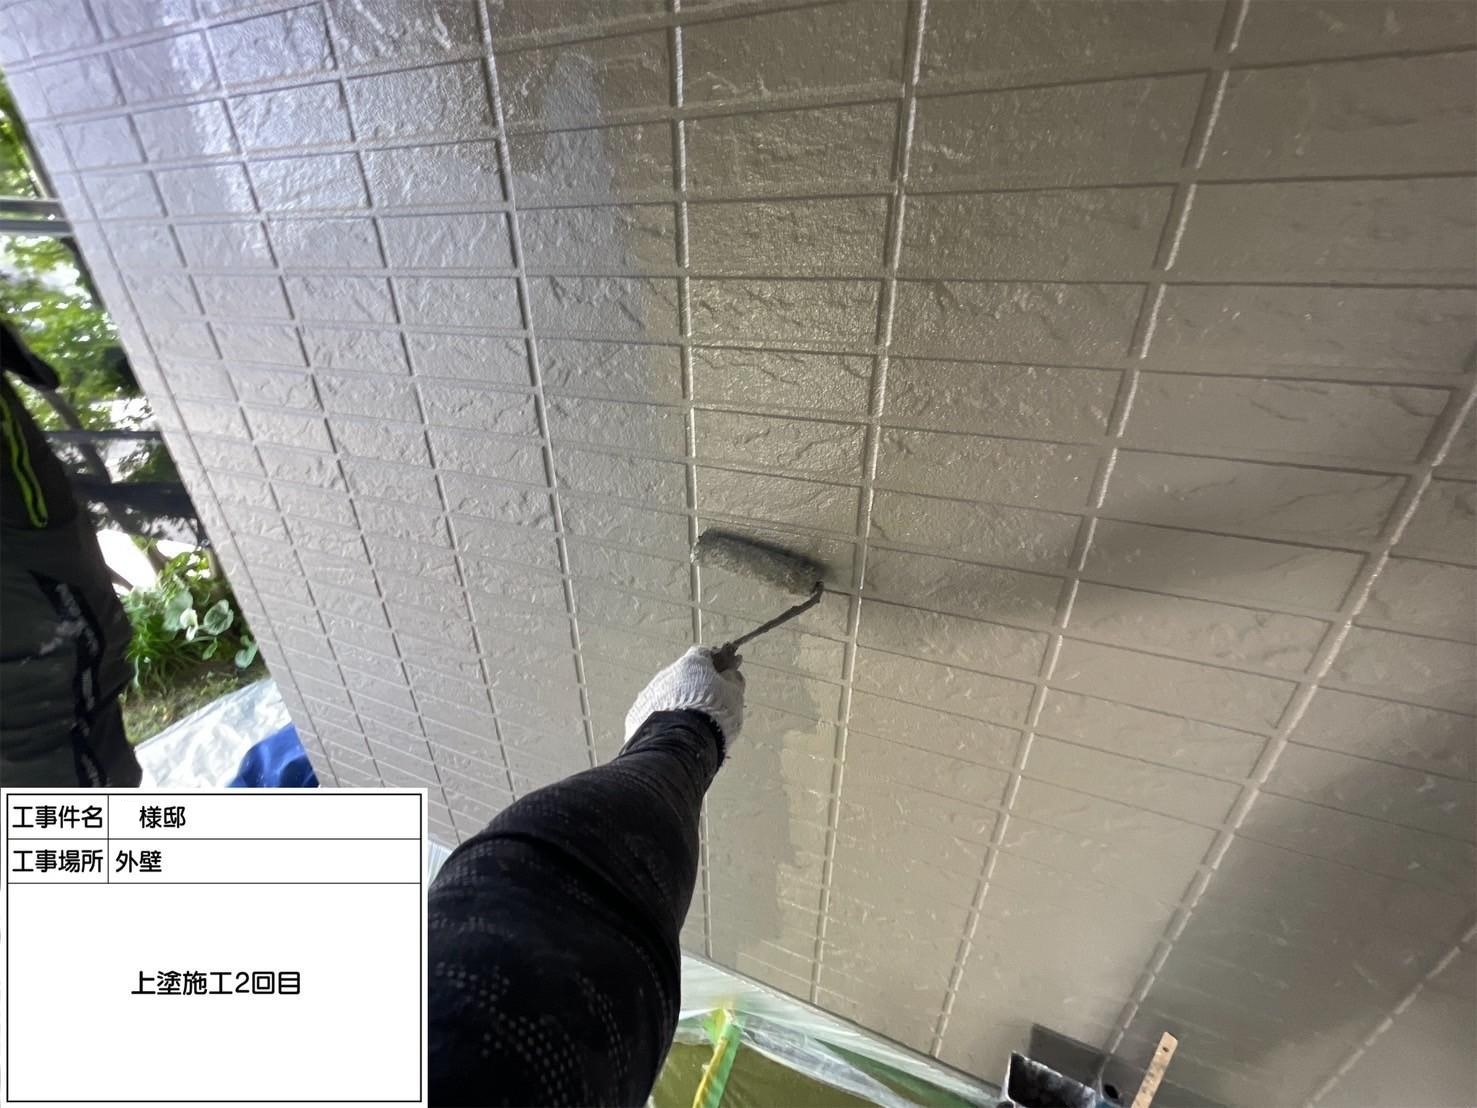 福岡県福岡市東区土井のH様邸でひび割れた外壁の補修やコケが繁殖している屋根の症状を改善し、さらに塗装にて耐久性と機能性の向上を行いました。ベランダ防水もひび割れを改善しウレタン防水を行いました。4/29完成です。【HPより】